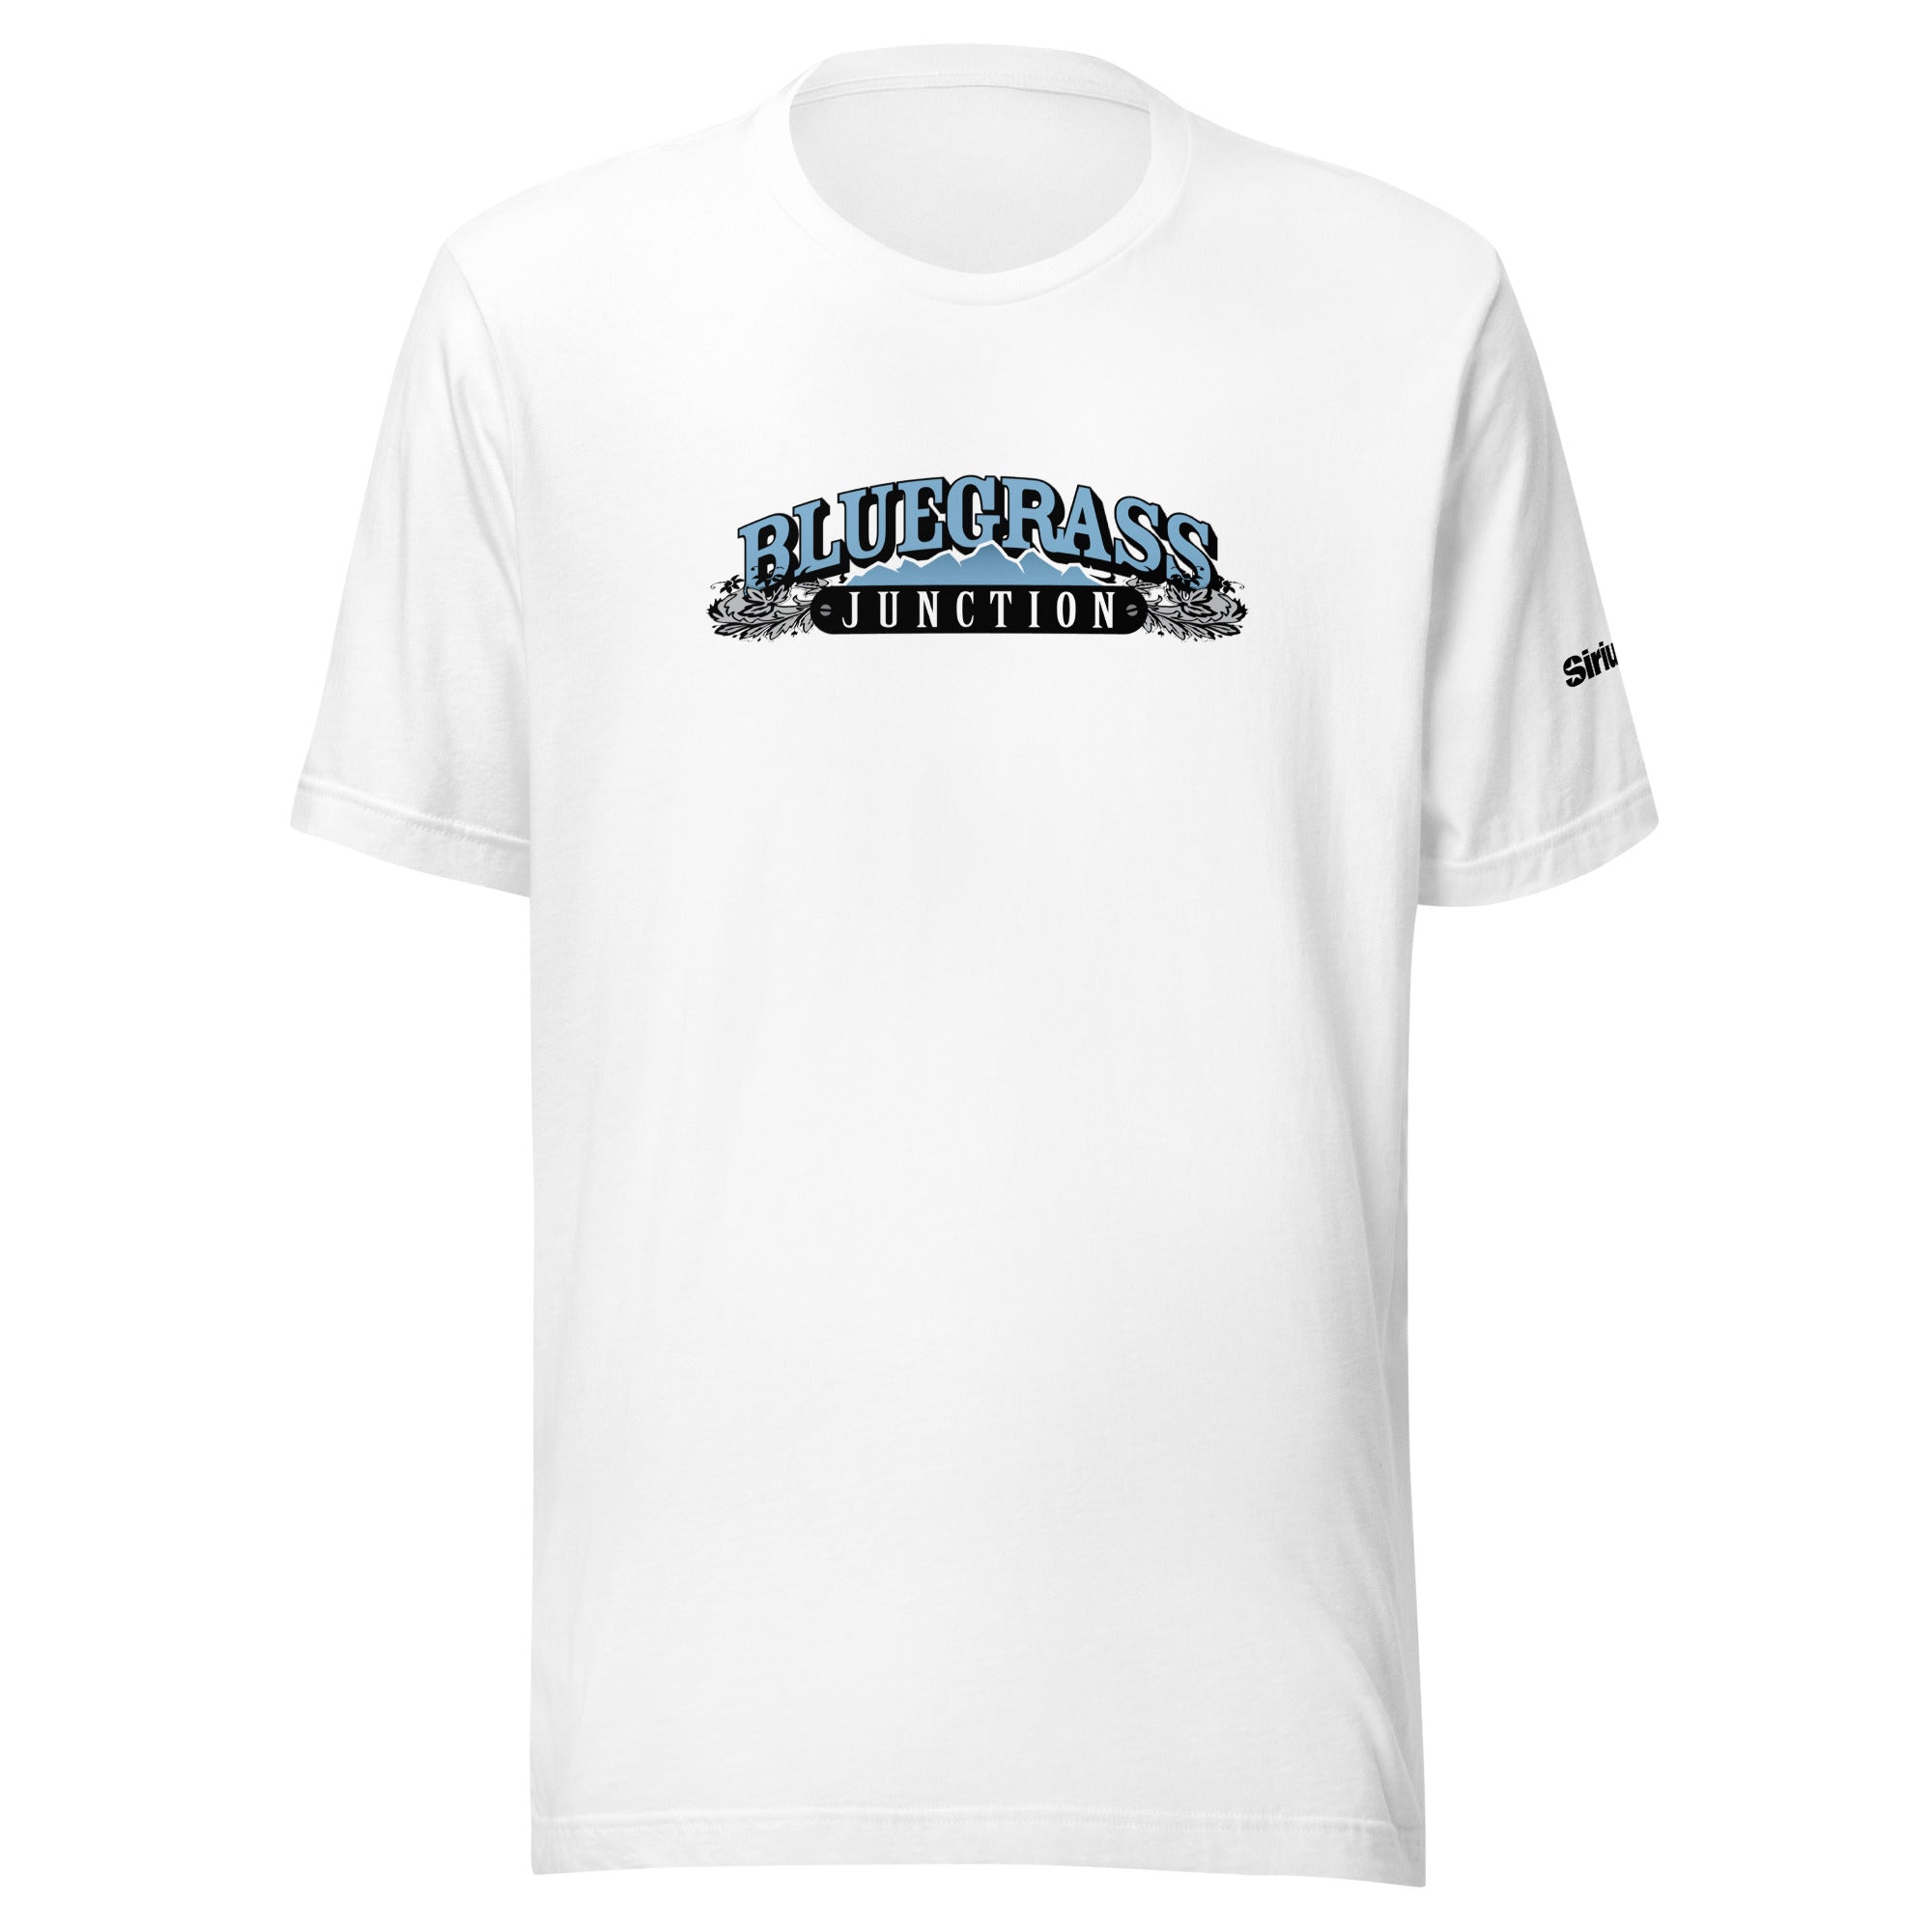 Bluegrass Junction: T-shirt (White)